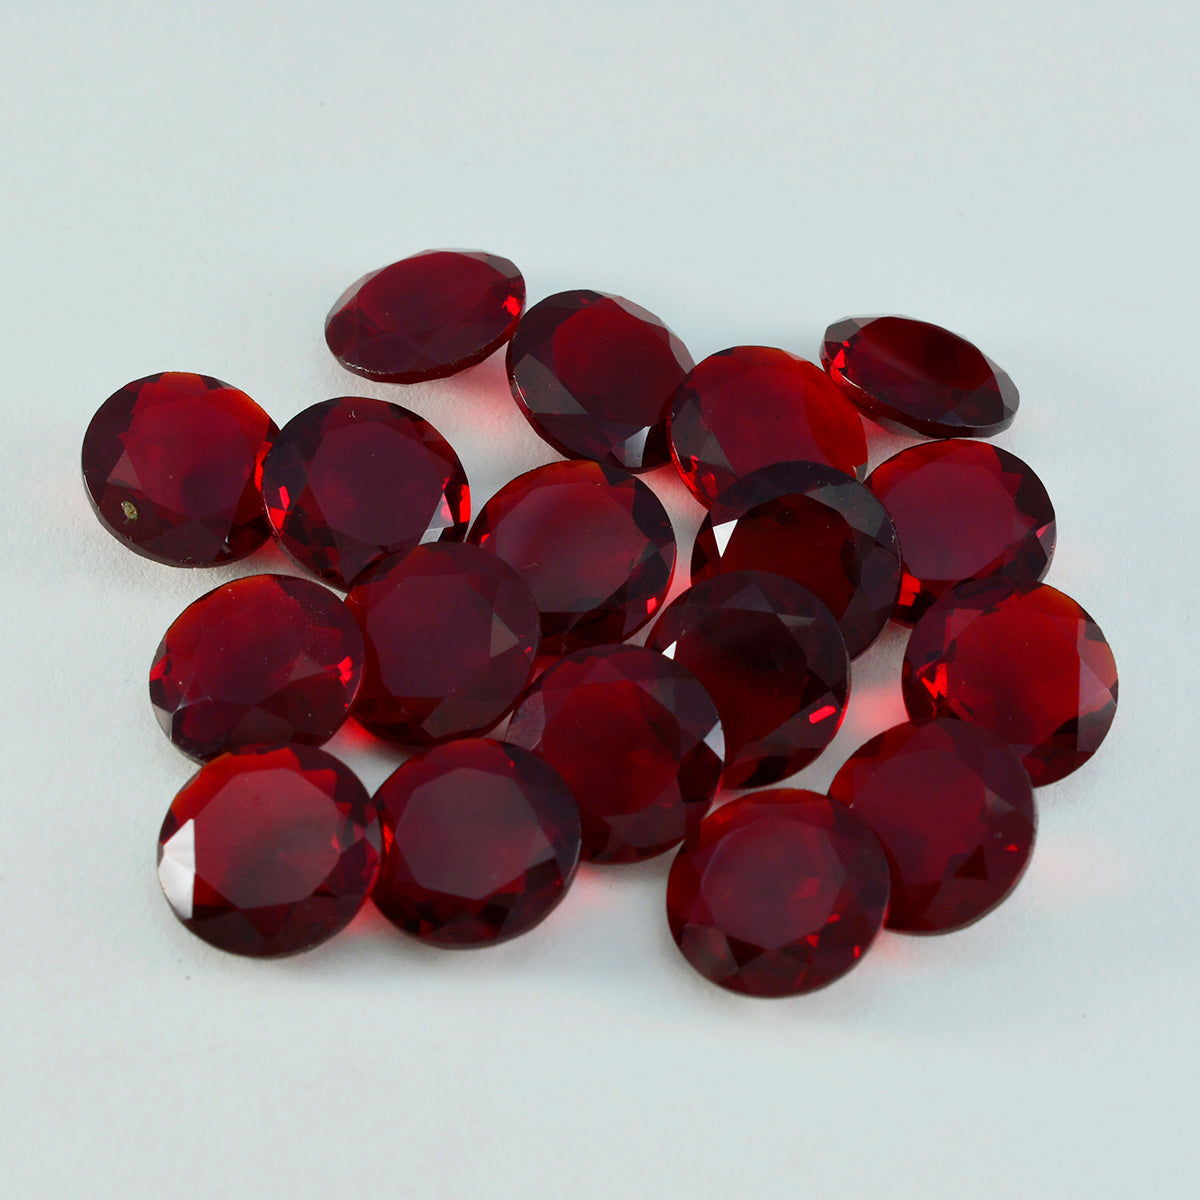 Riyogems 1 pieza de rubí rojo cz facetado 9x9 mm forma redonda piedra preciosa suelta de calidad atractiva